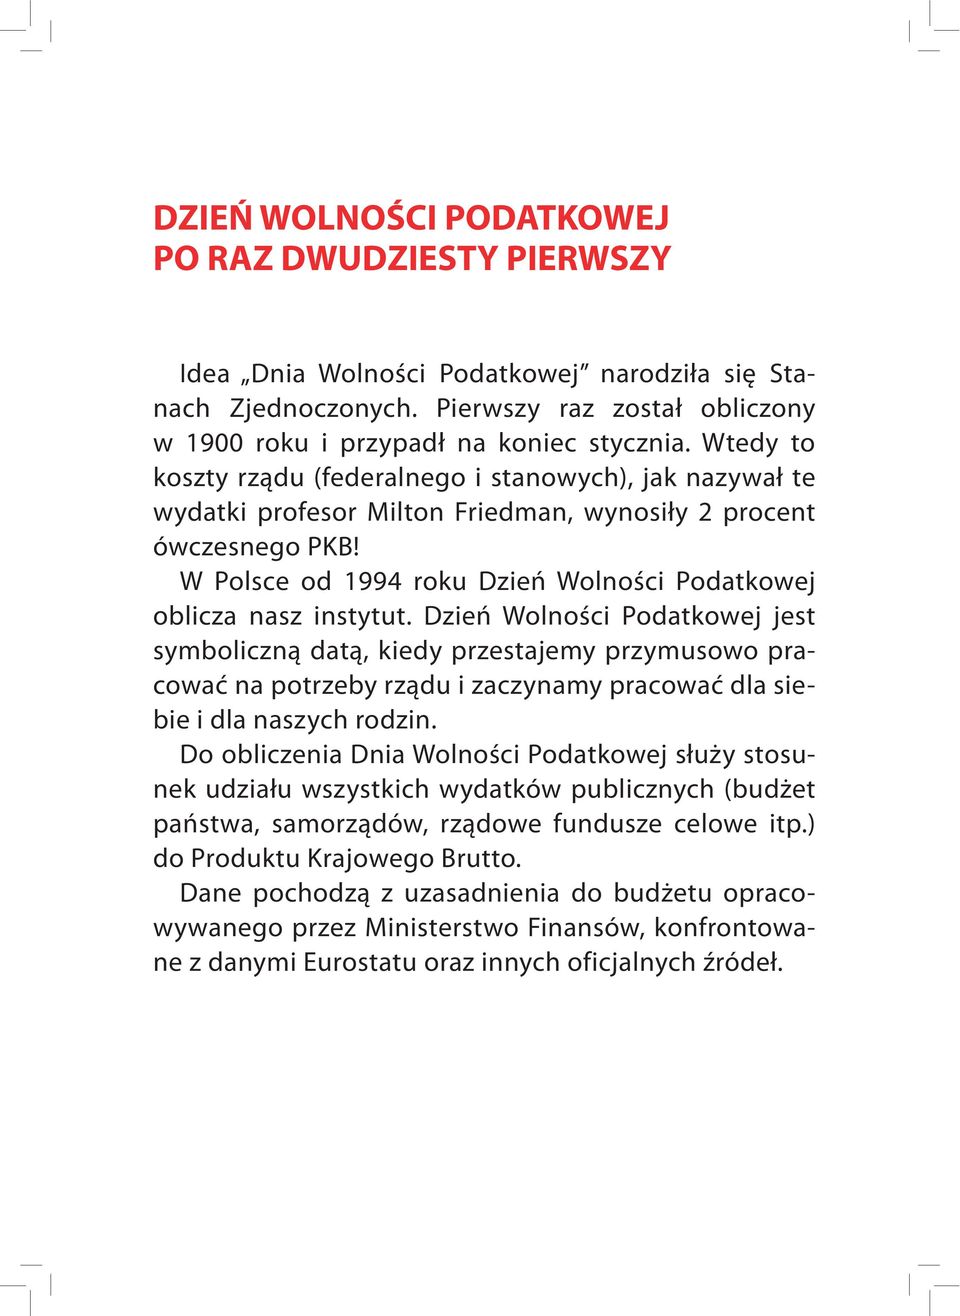 W Polsce od 1994 roku Dzień Wolności Podatkowej oblicza nasz instytut.